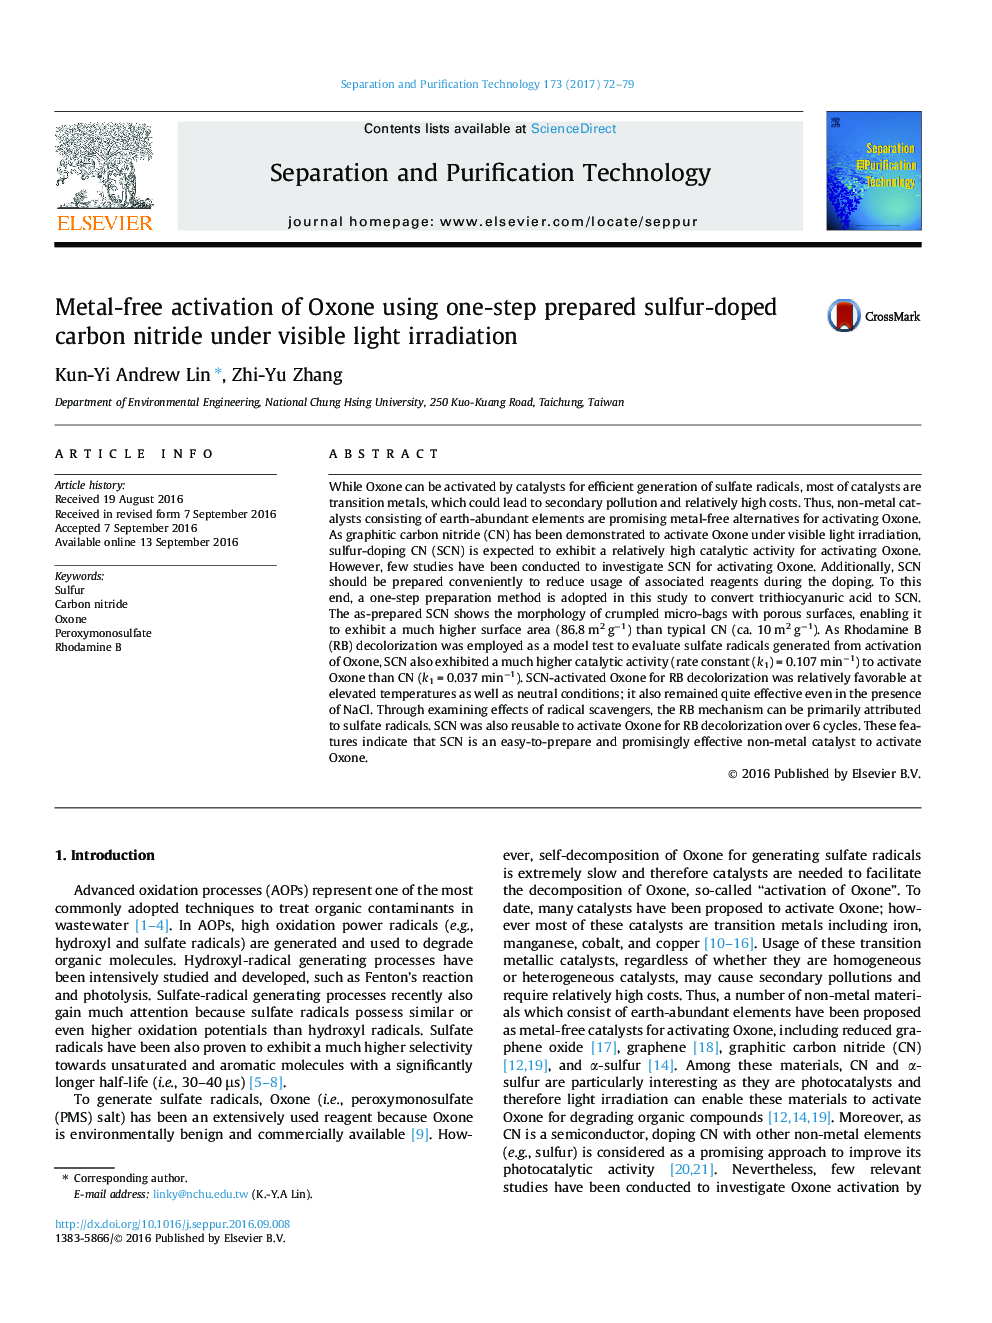 فعال سازی فلز بدون استفاده از اکسون با استفاده از یک مرحله ای از نیترید کربن سولفور کربن تحت نور تابش نور مرئی 